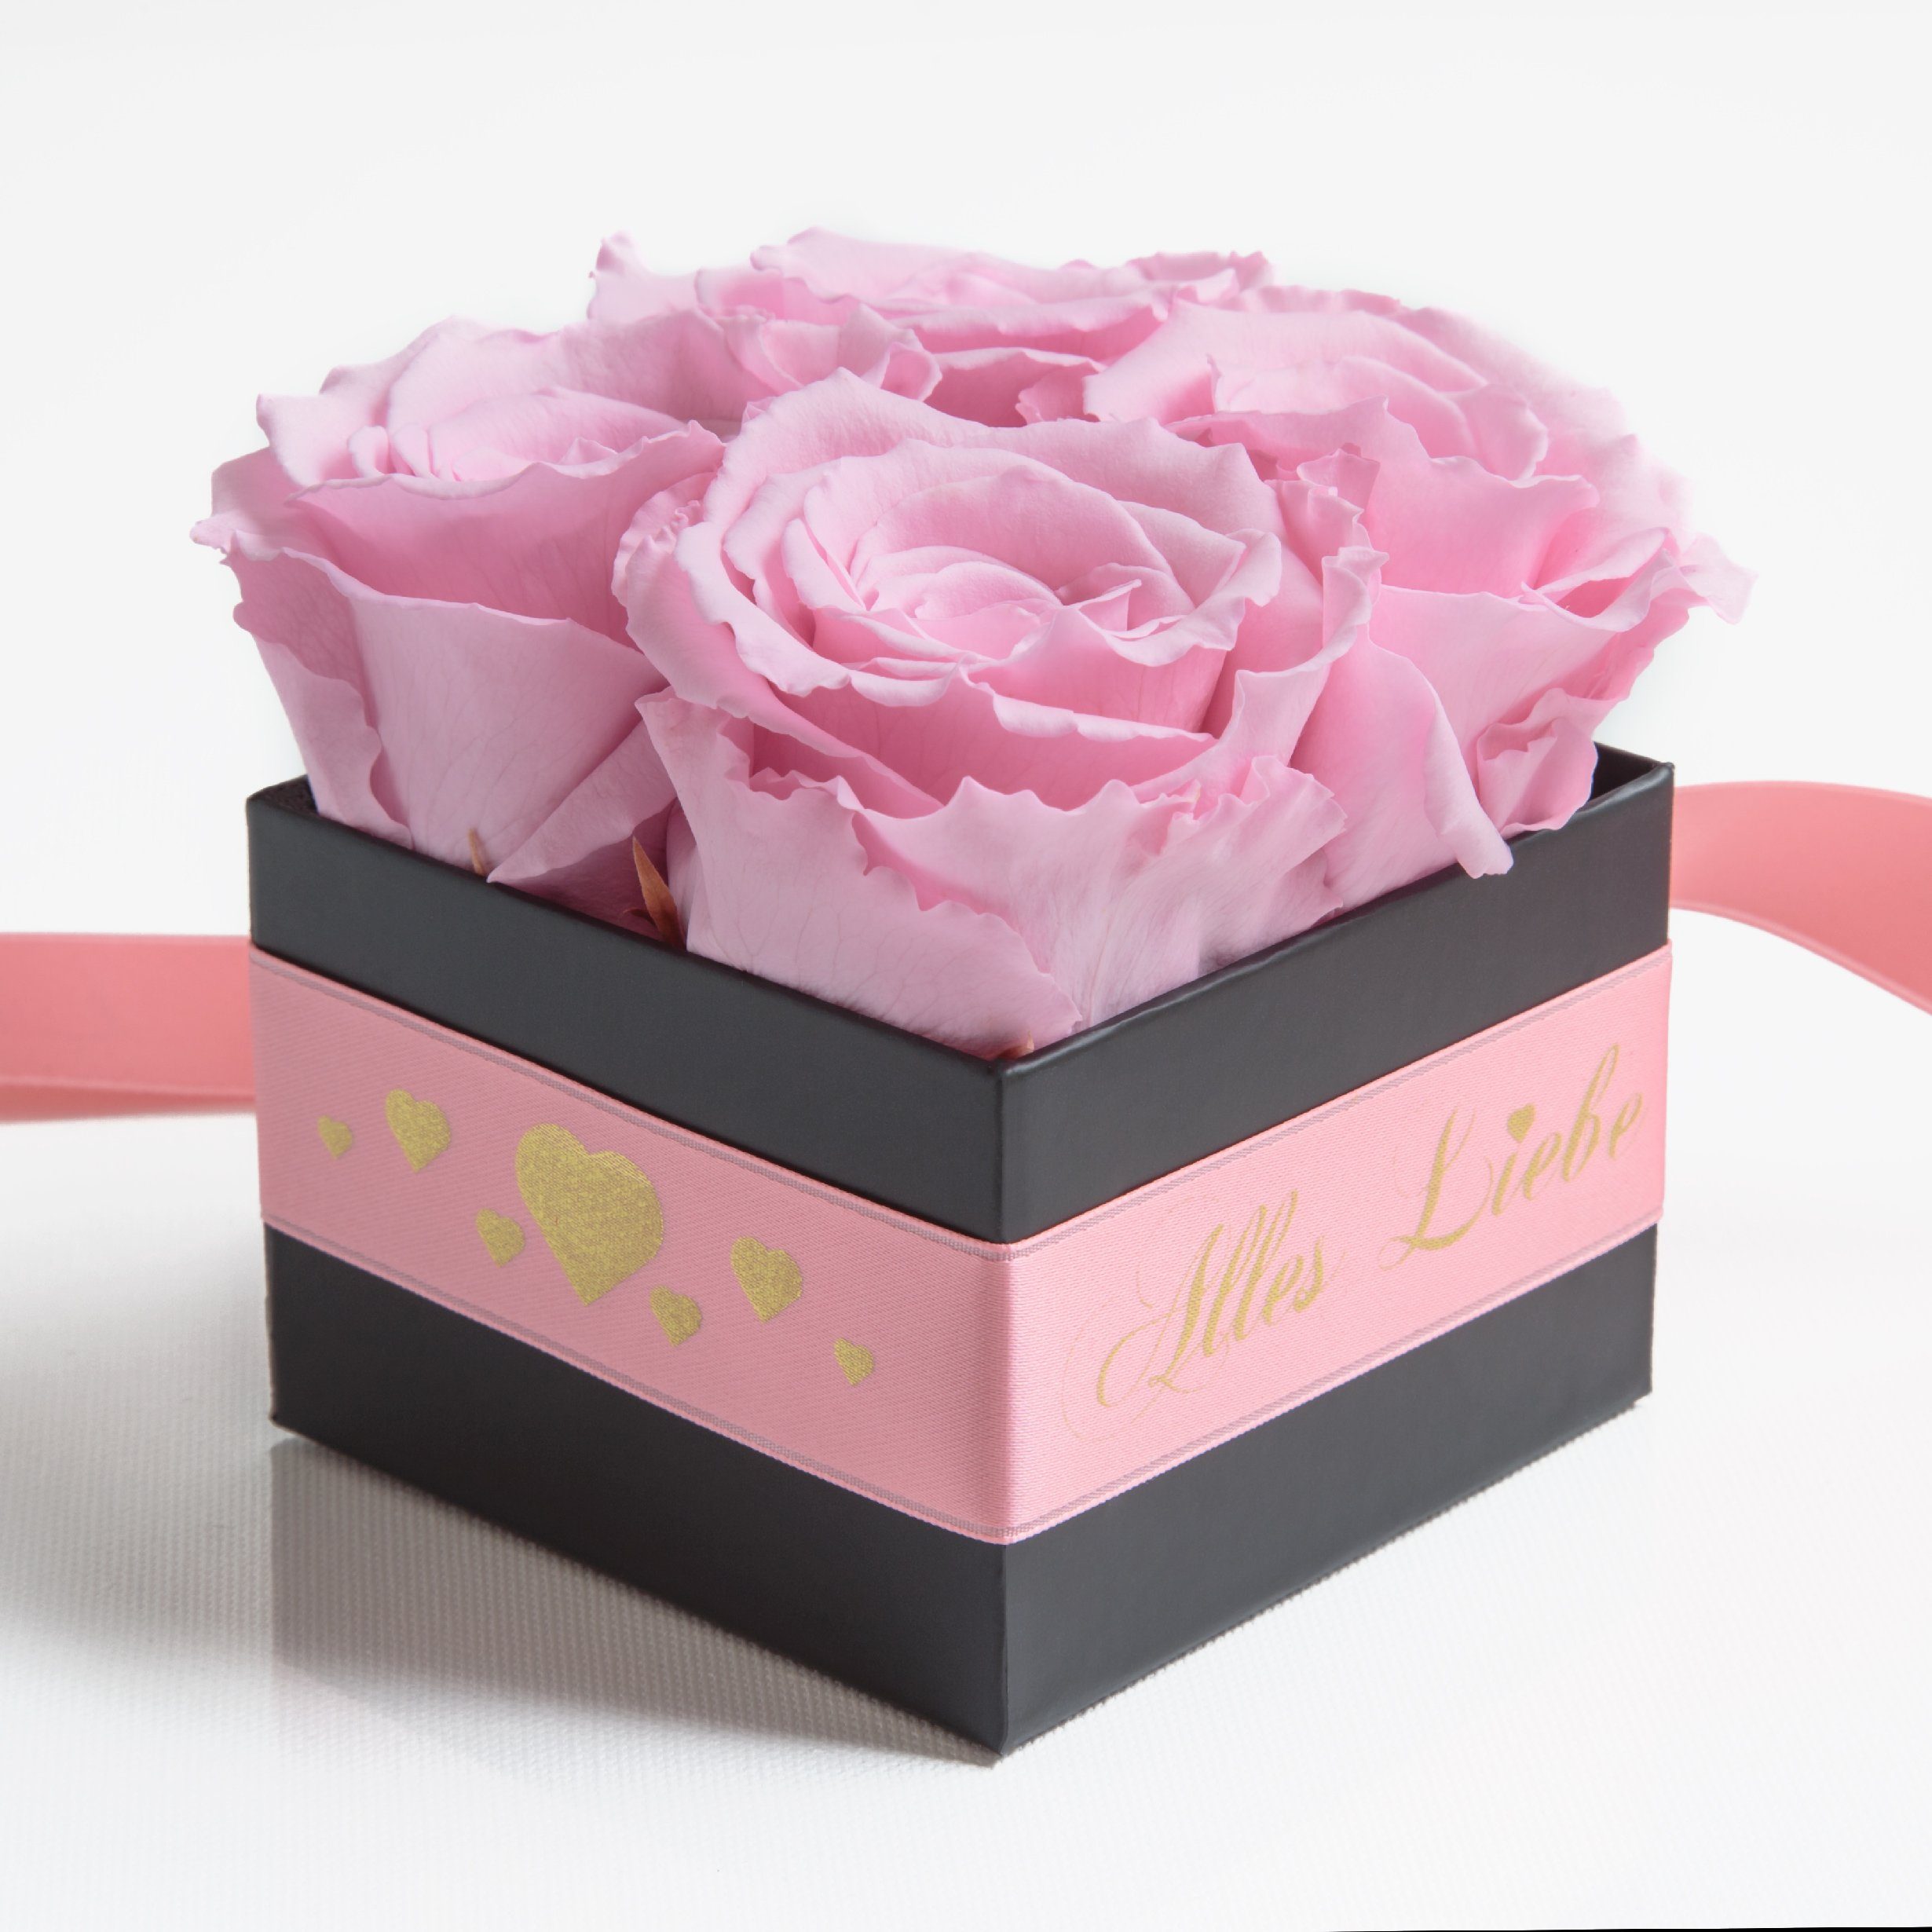 Infinity Liebe Rose, Geschenk Rosen echte Muttertag Höhe Rosa SCHULZ cm, Blumen Alles Heidelberg, 8,5 konservierte Kunstblumenstrauß Rosenbox ROSEMARIE